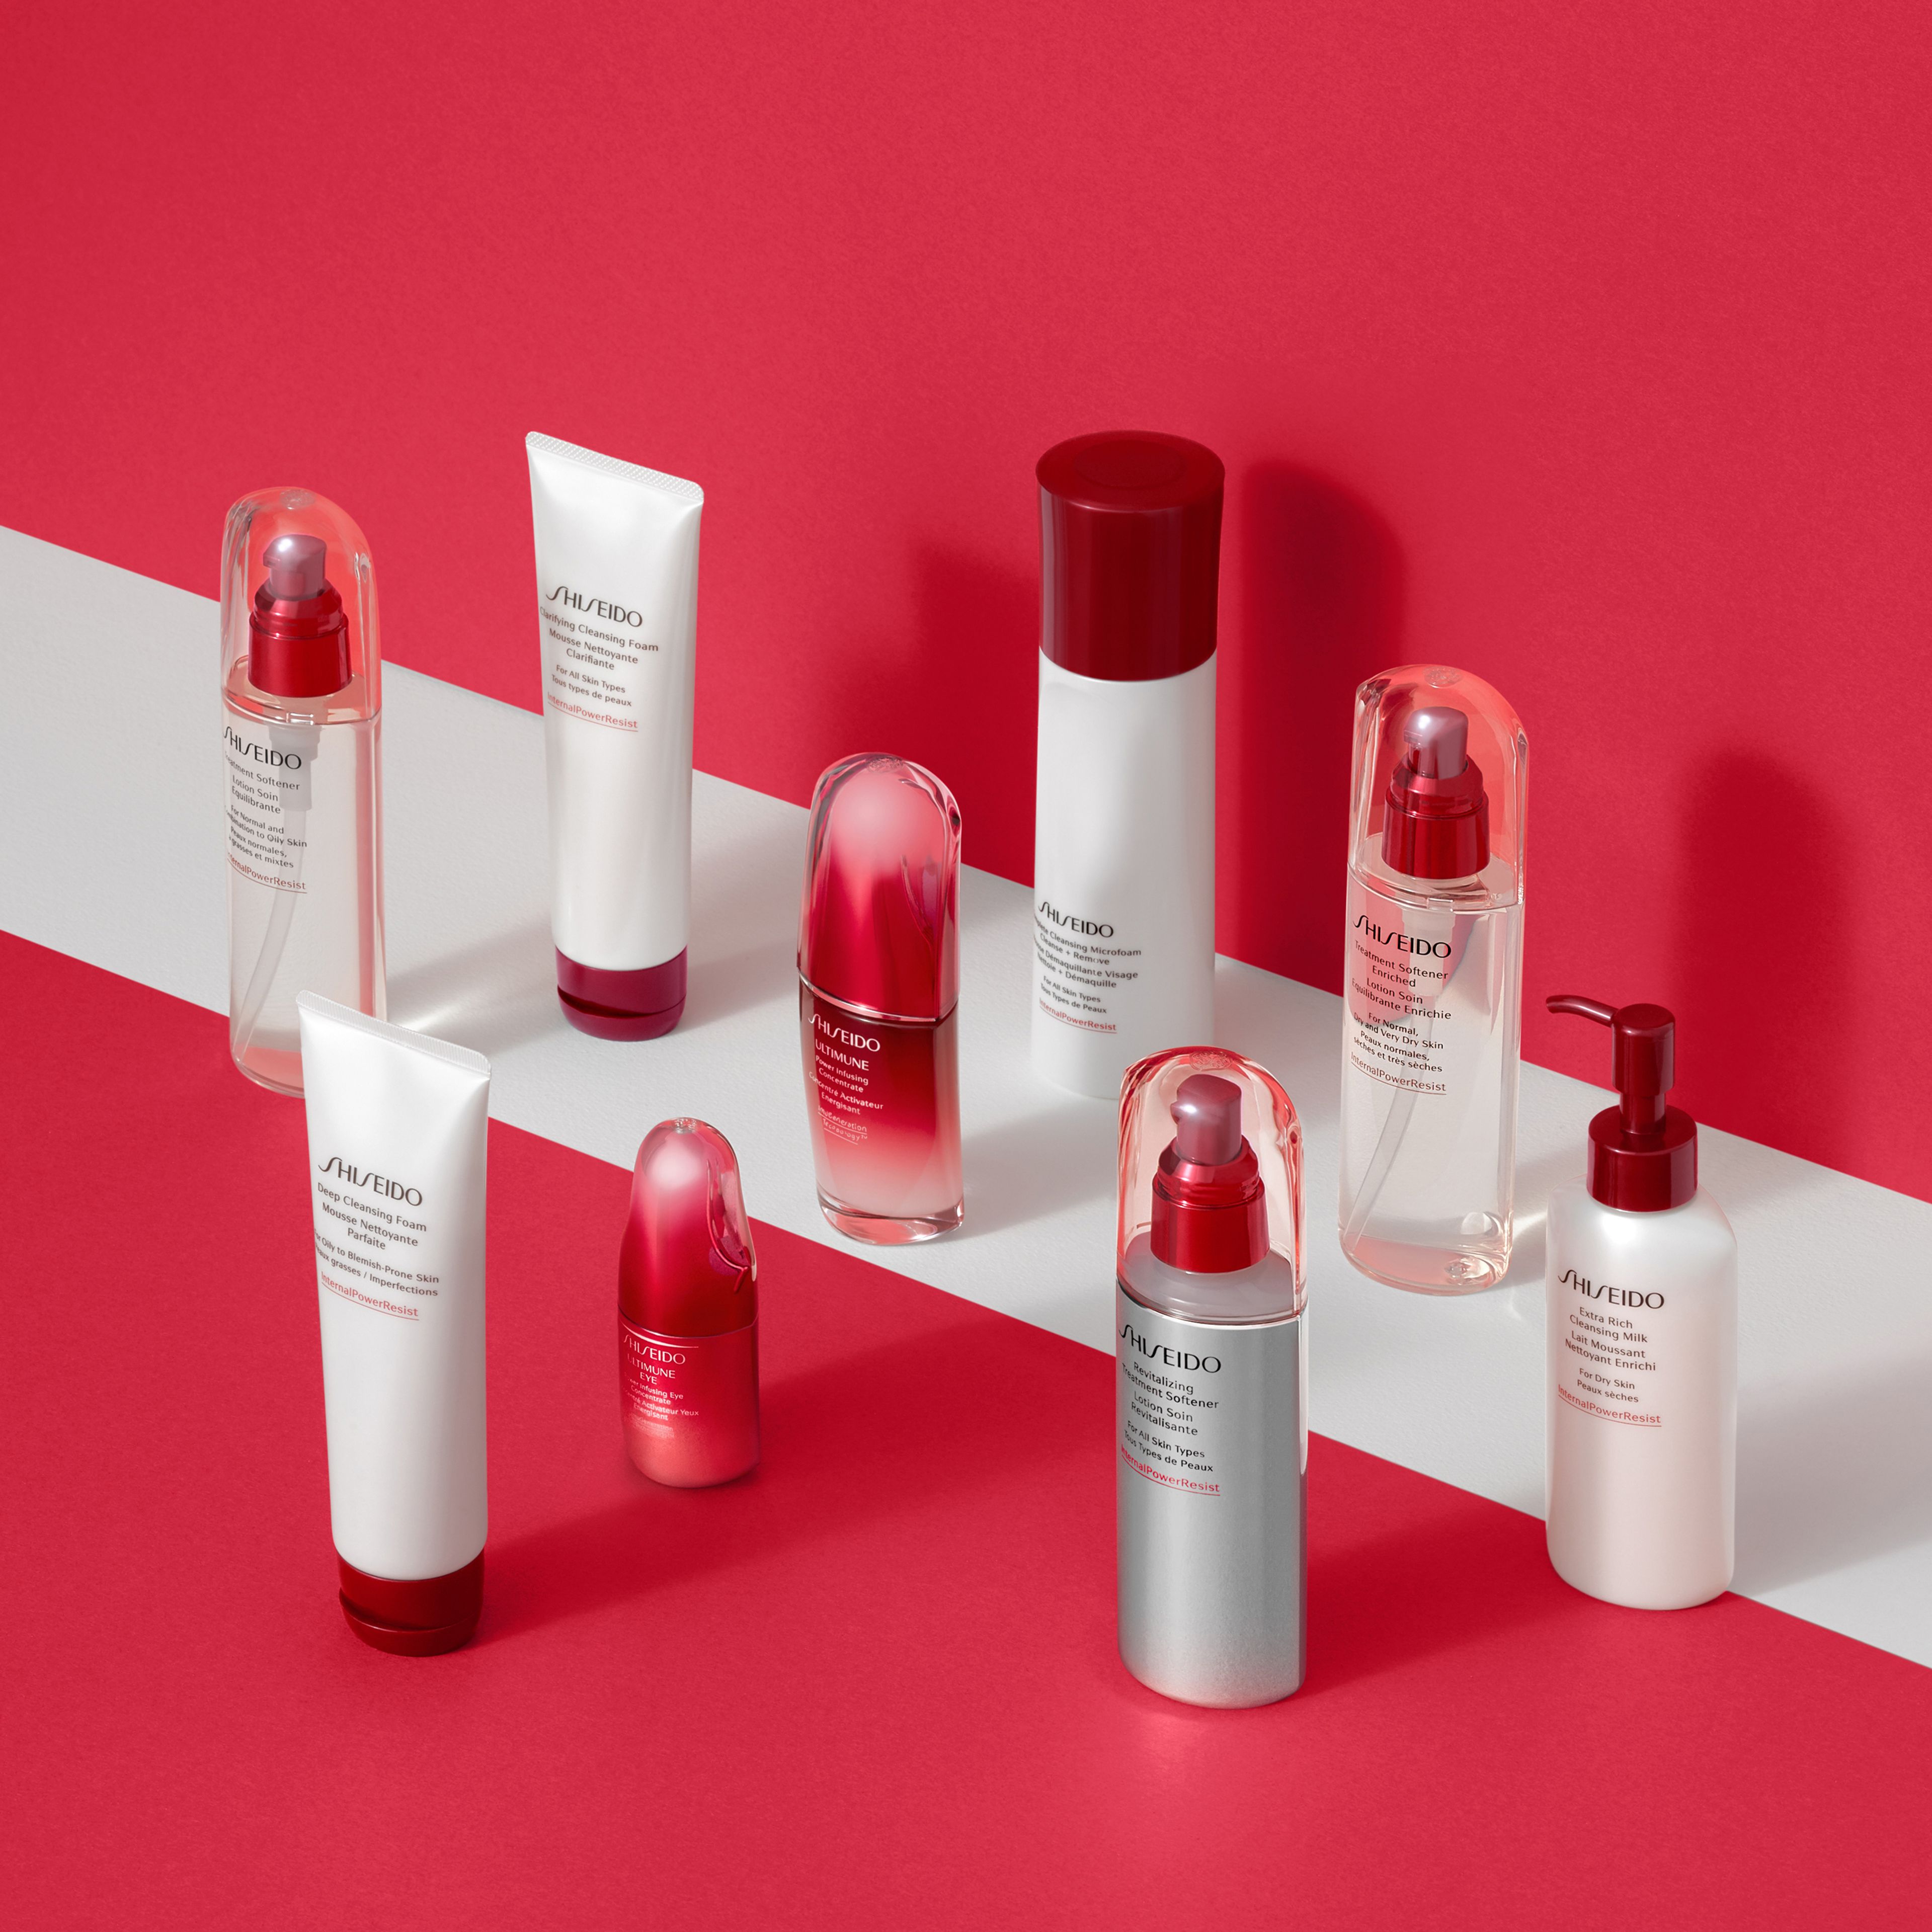 Revitalizing Treatment Softener Shiseido 5